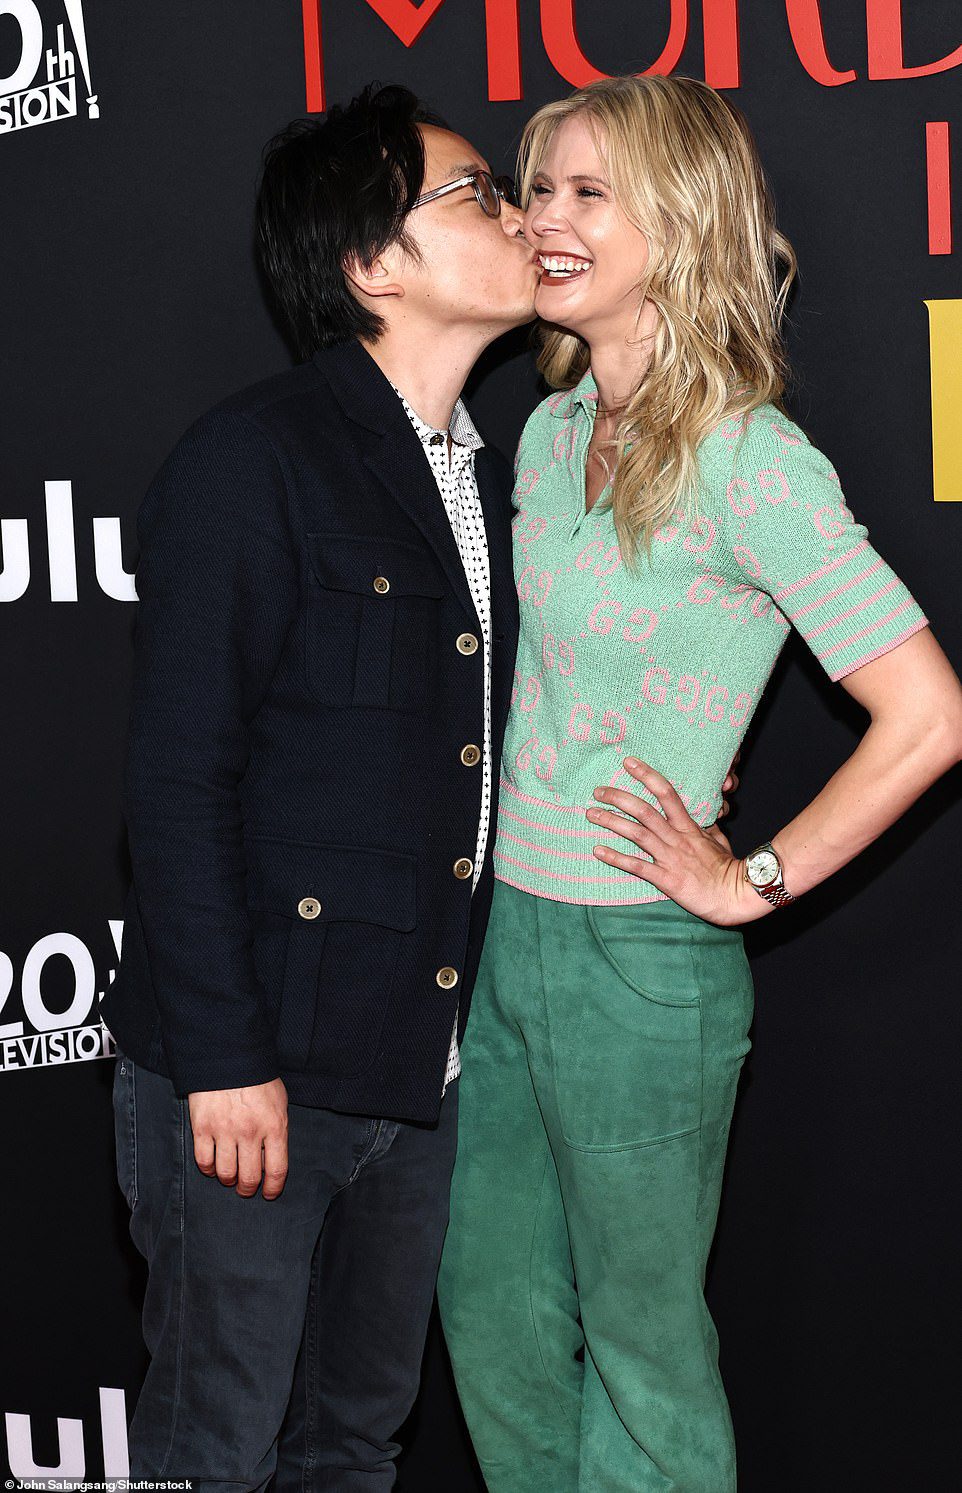 Bacio: Jimmy O. Yang dà un bacio alla sua ragazza Bri Kimmel alla premiere di 